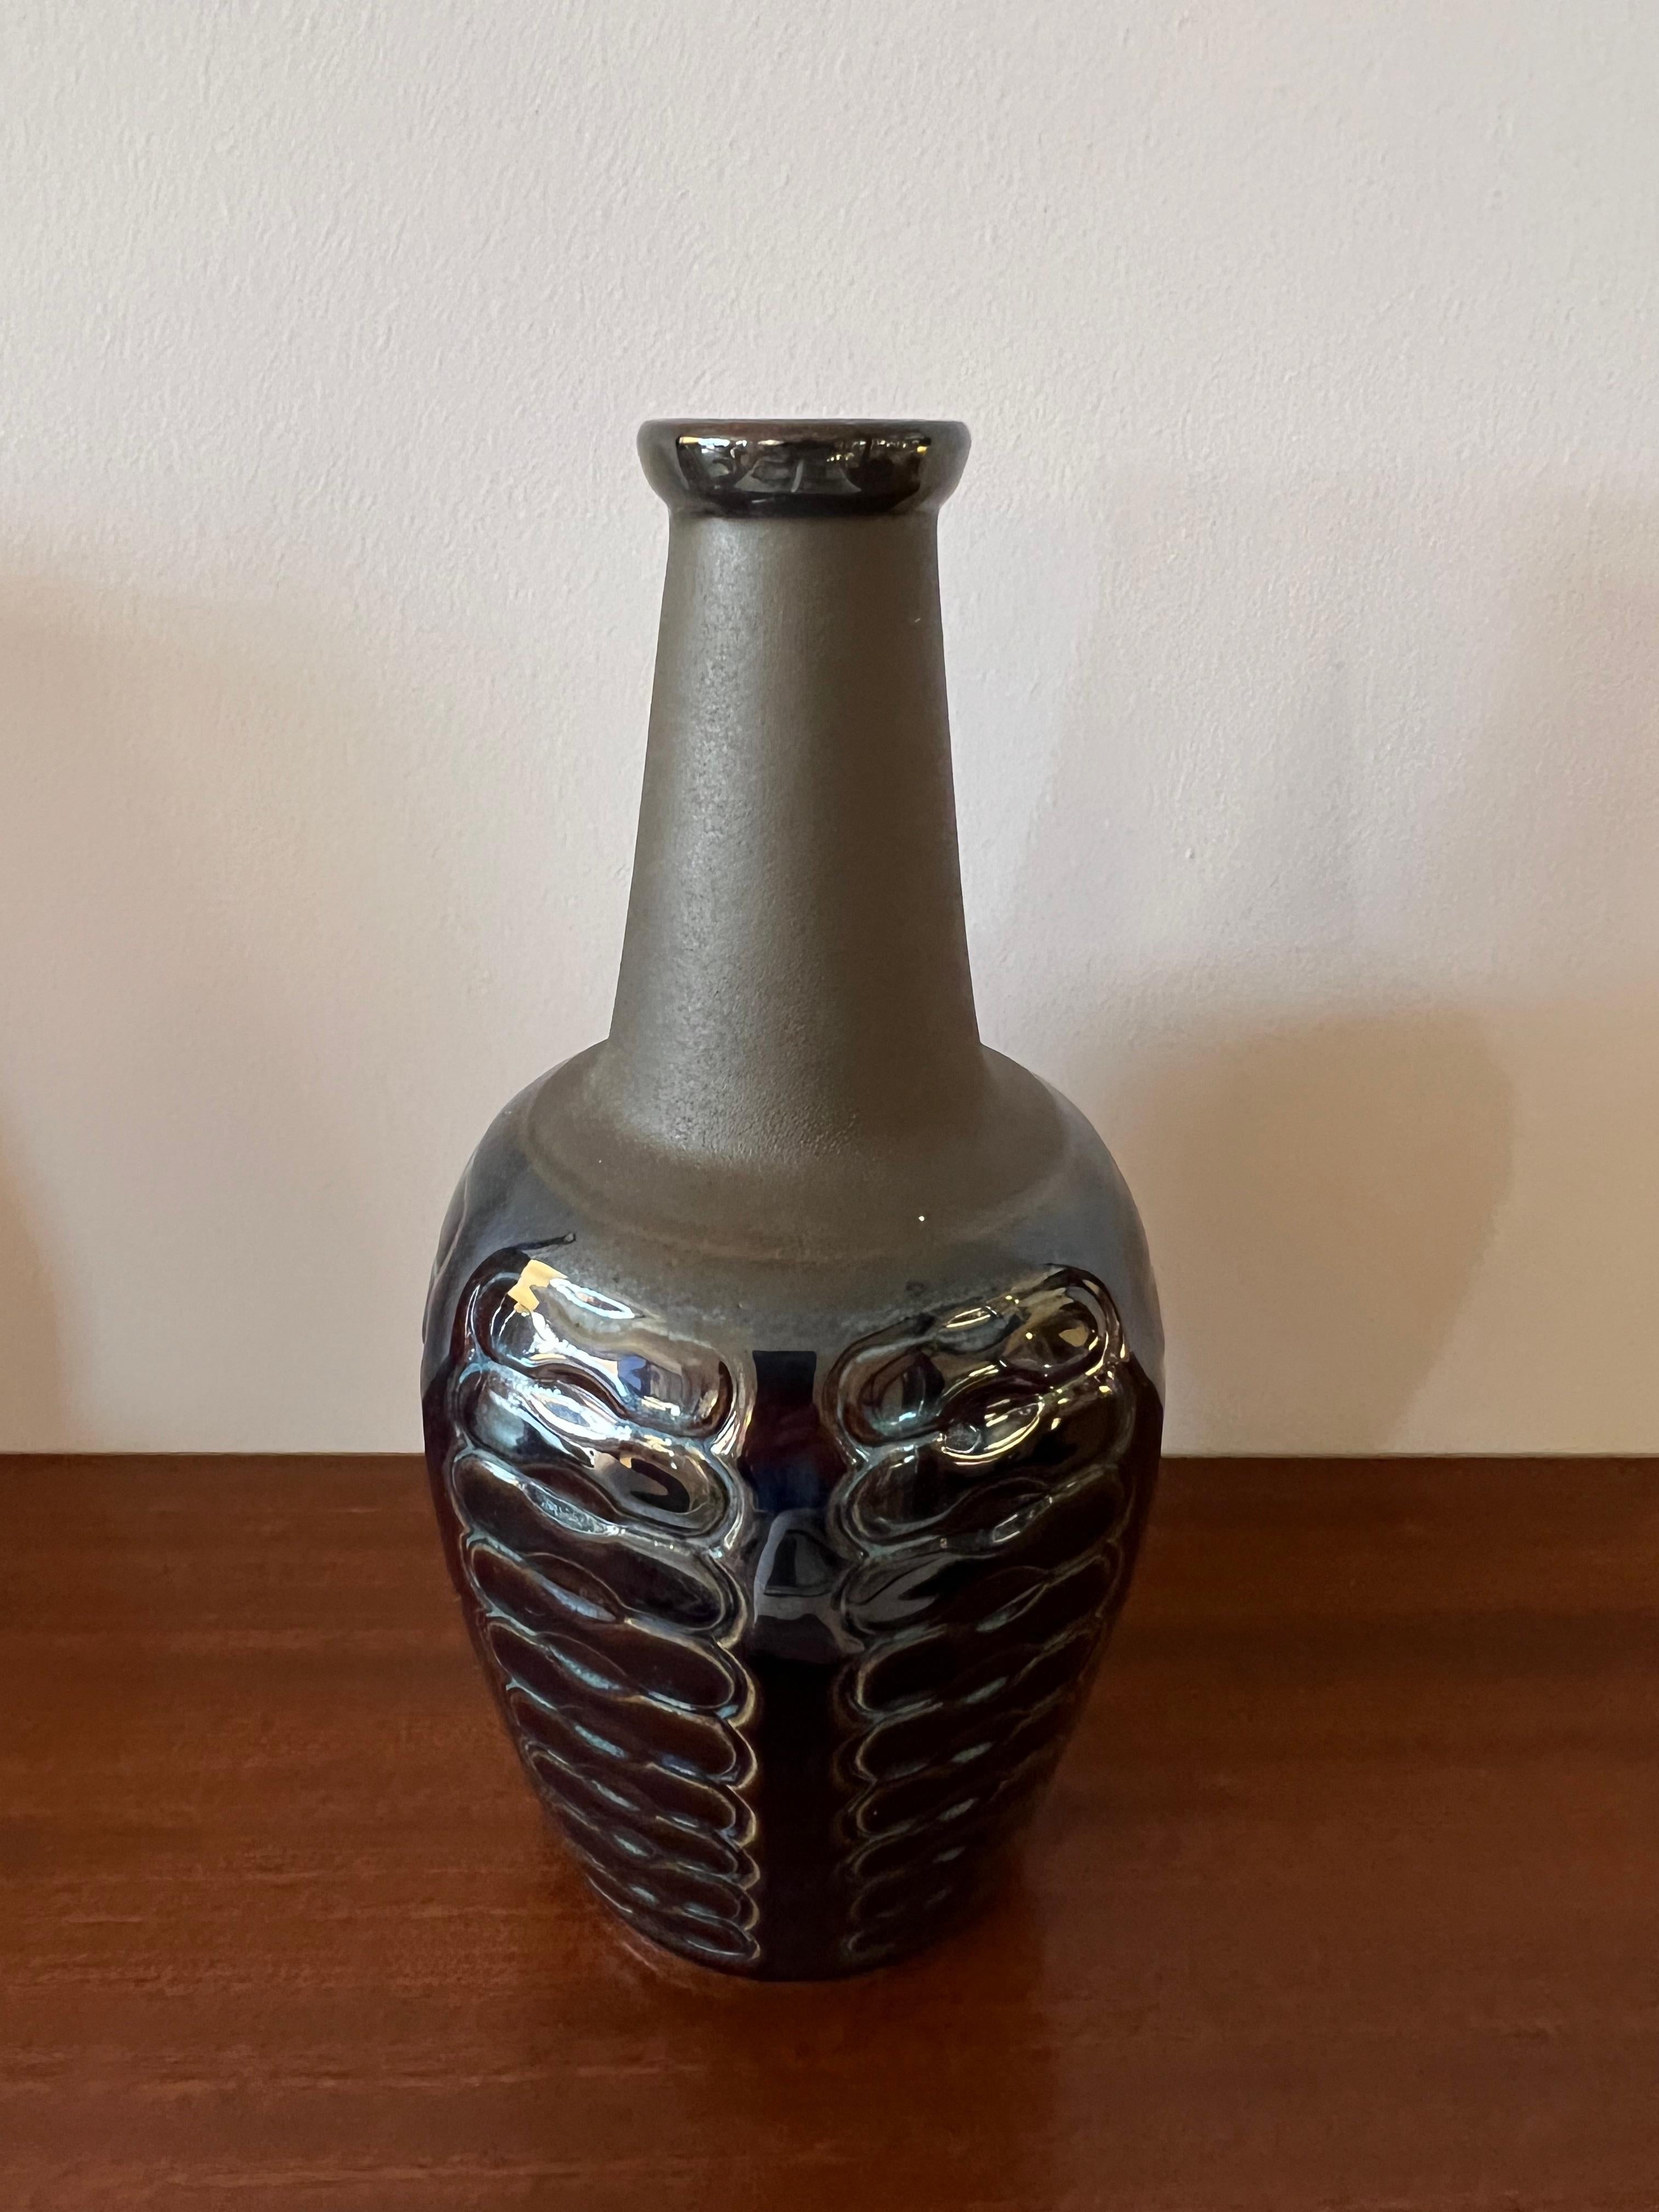 Magnifique et rare vase en céramique de la manufacture de Soholm, Danemark années 60. Très bon état, beau travail fait à la main. Signé.
